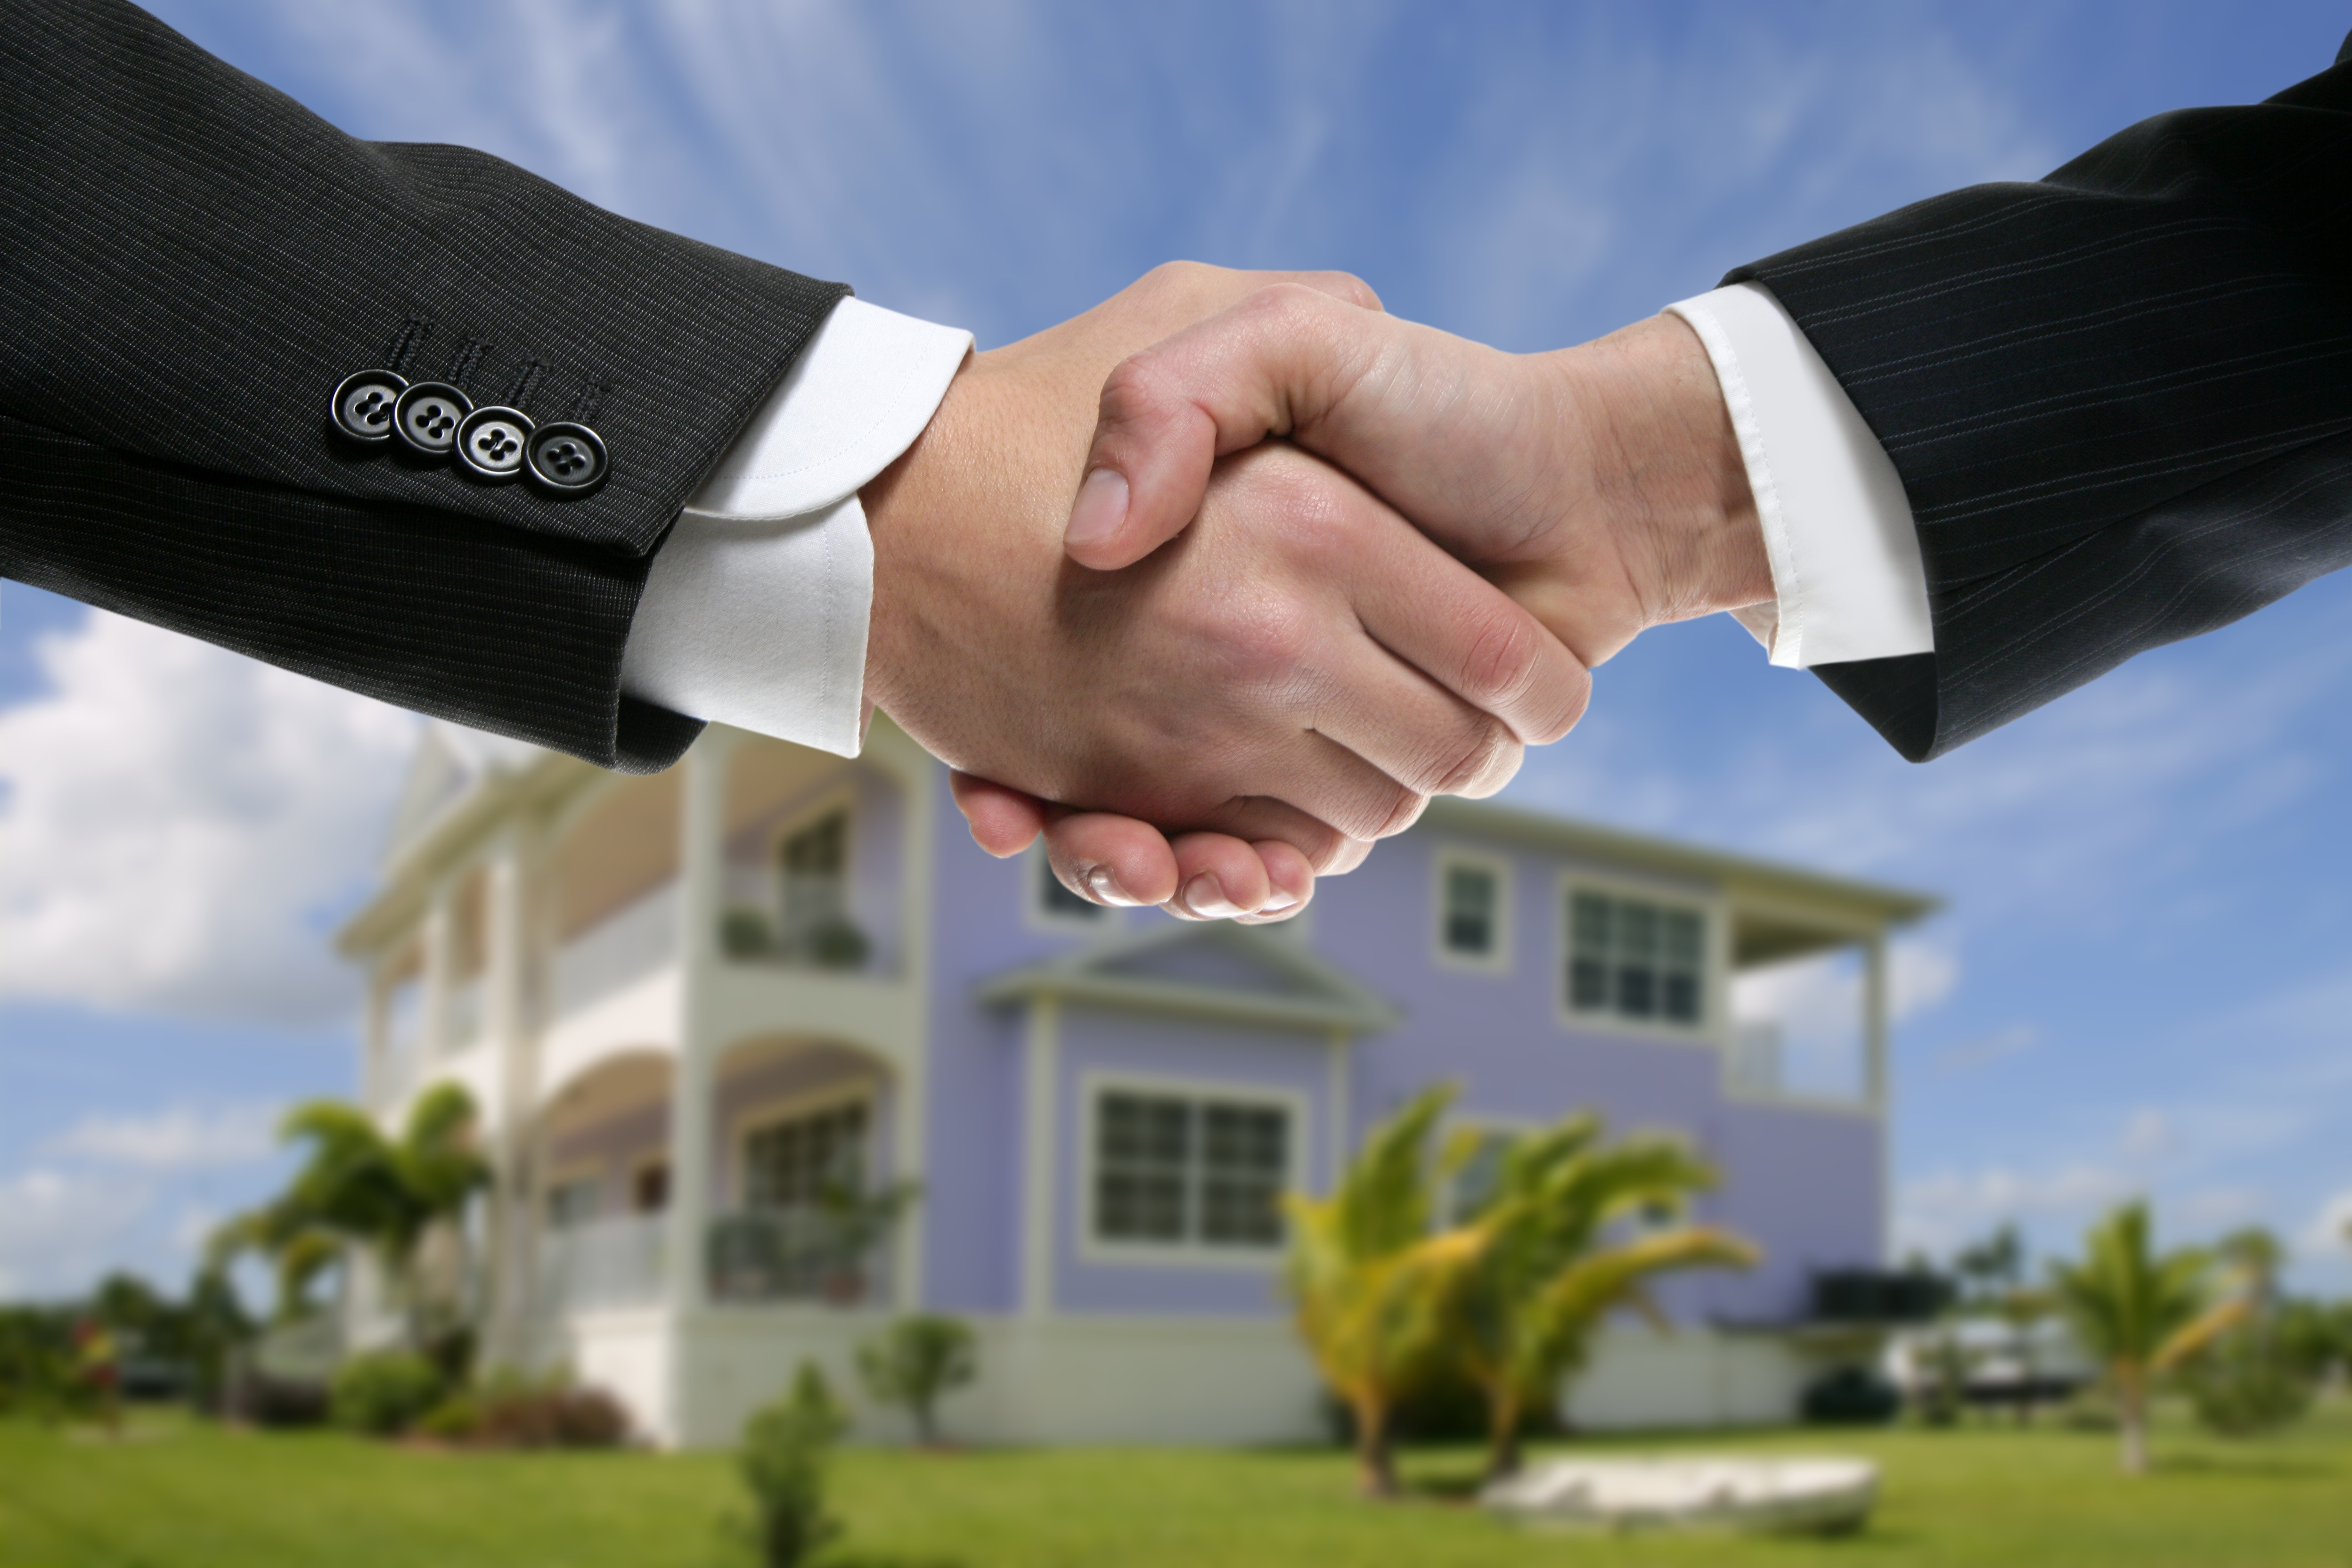 Properties real estate. Сопровождение сделок с недвижимостью. Сделки с недвижимостью. Партнерство в бизнесе. Недвижимость.